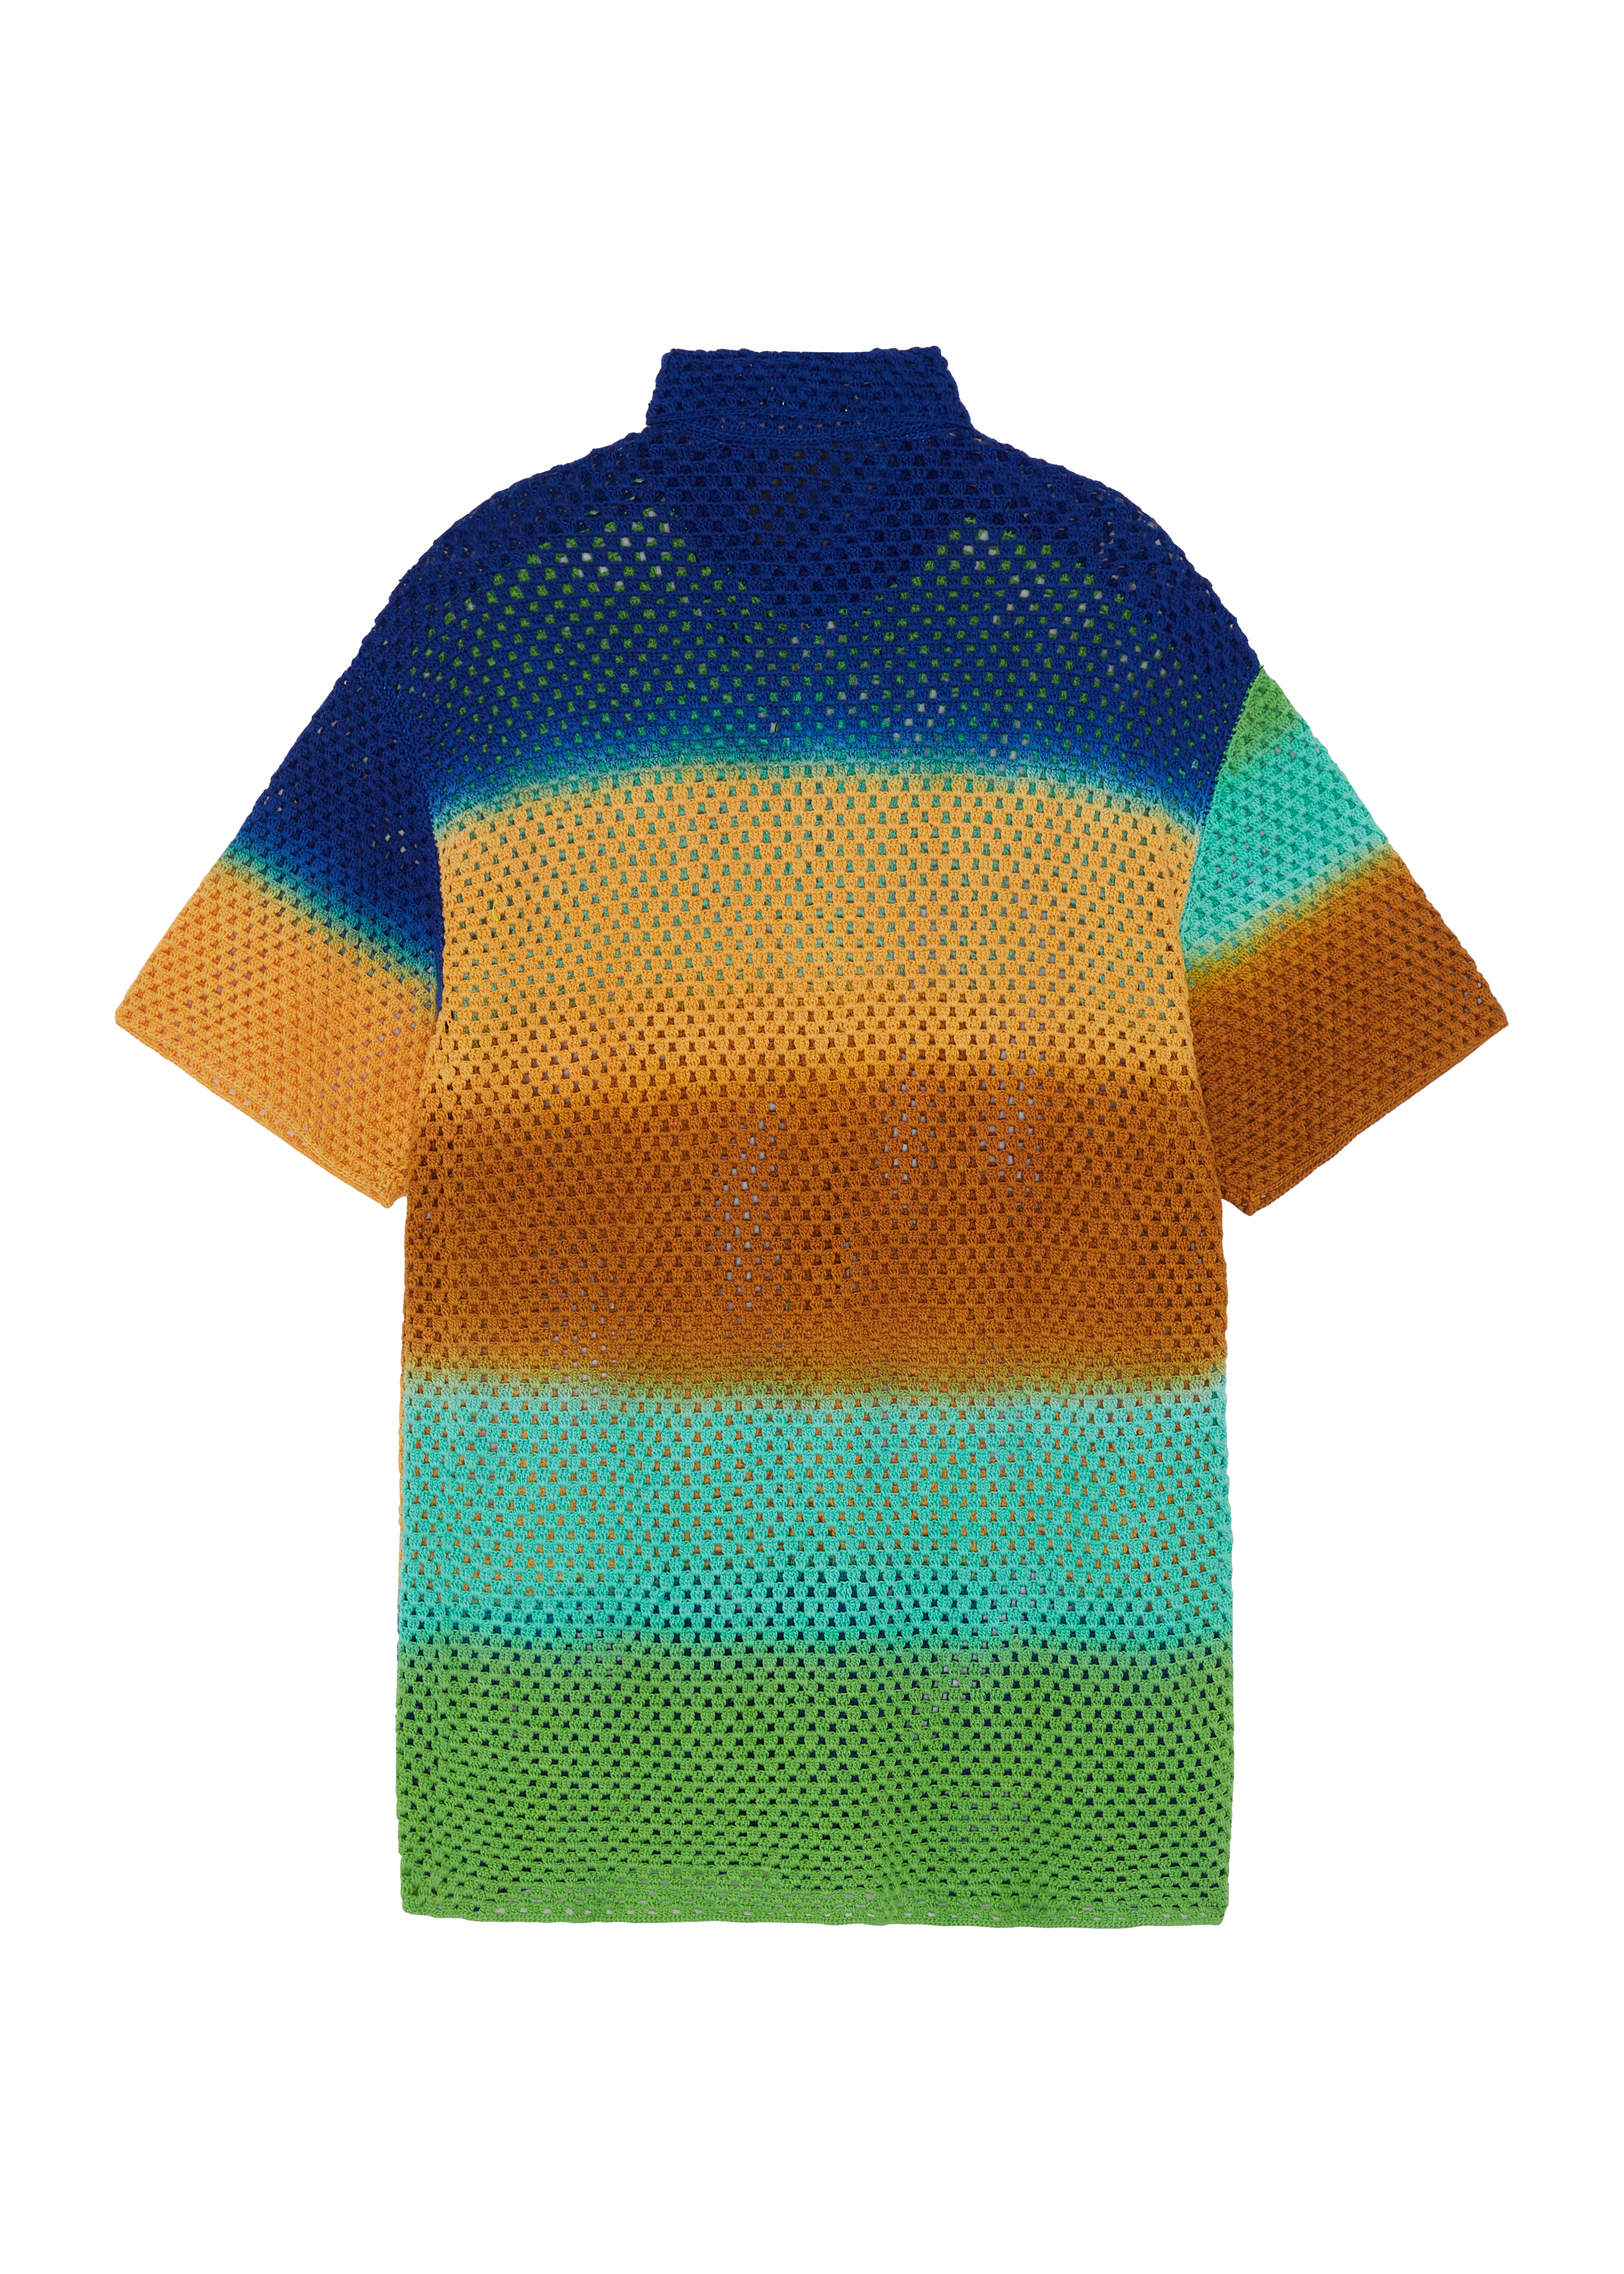 agr - wellness crochet shirt - packshot - back